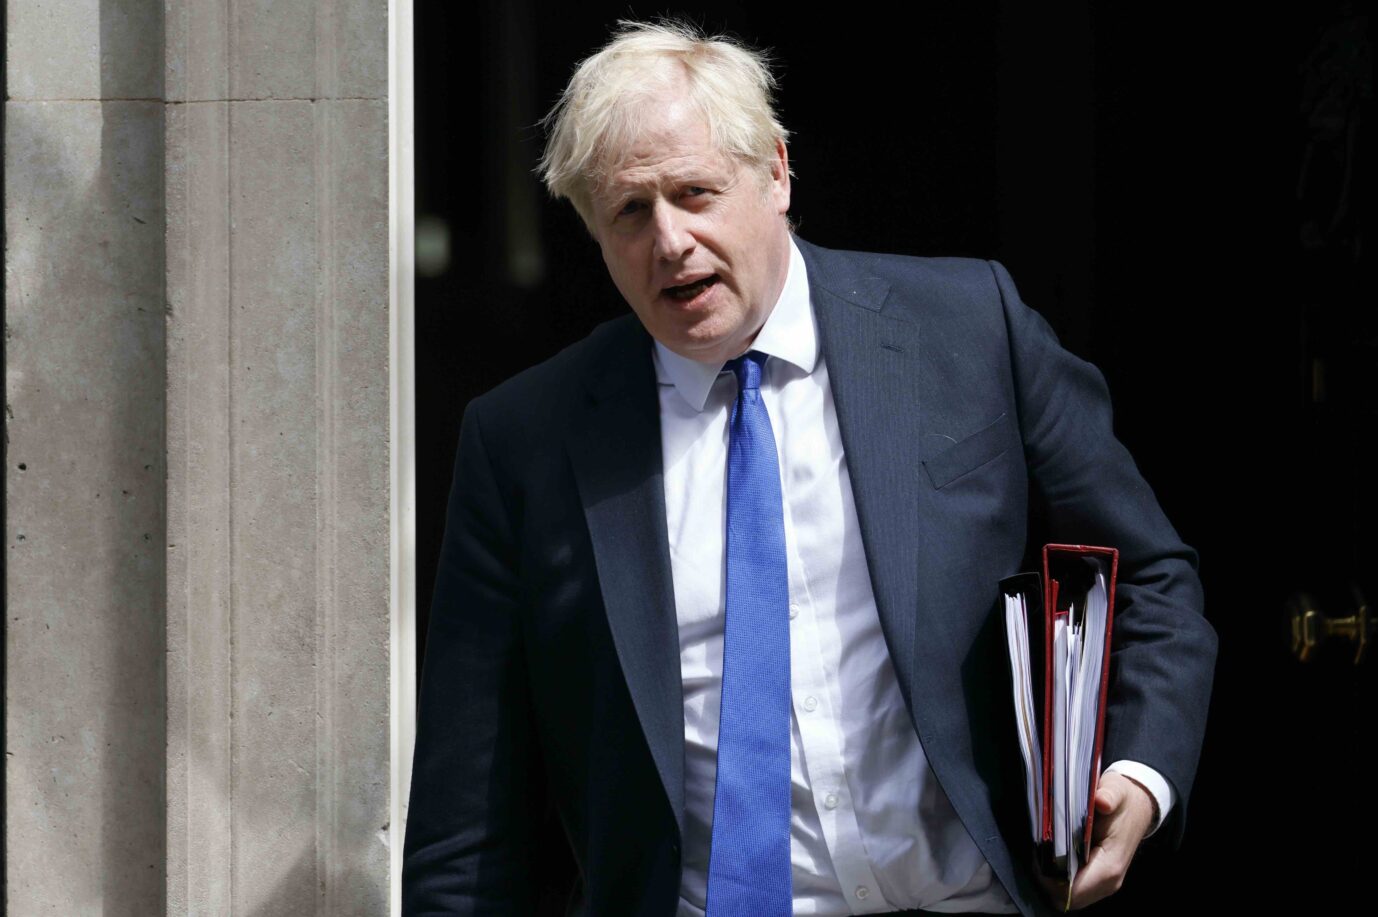 Premierminister Boris Johnson (Konservative) verläßt seinen Amtssitz in Downing Street Immer mehr Parteifreunde fordern seinen Rücktritt Foto: picture alliance / EPA | TOLGA AKMEN.